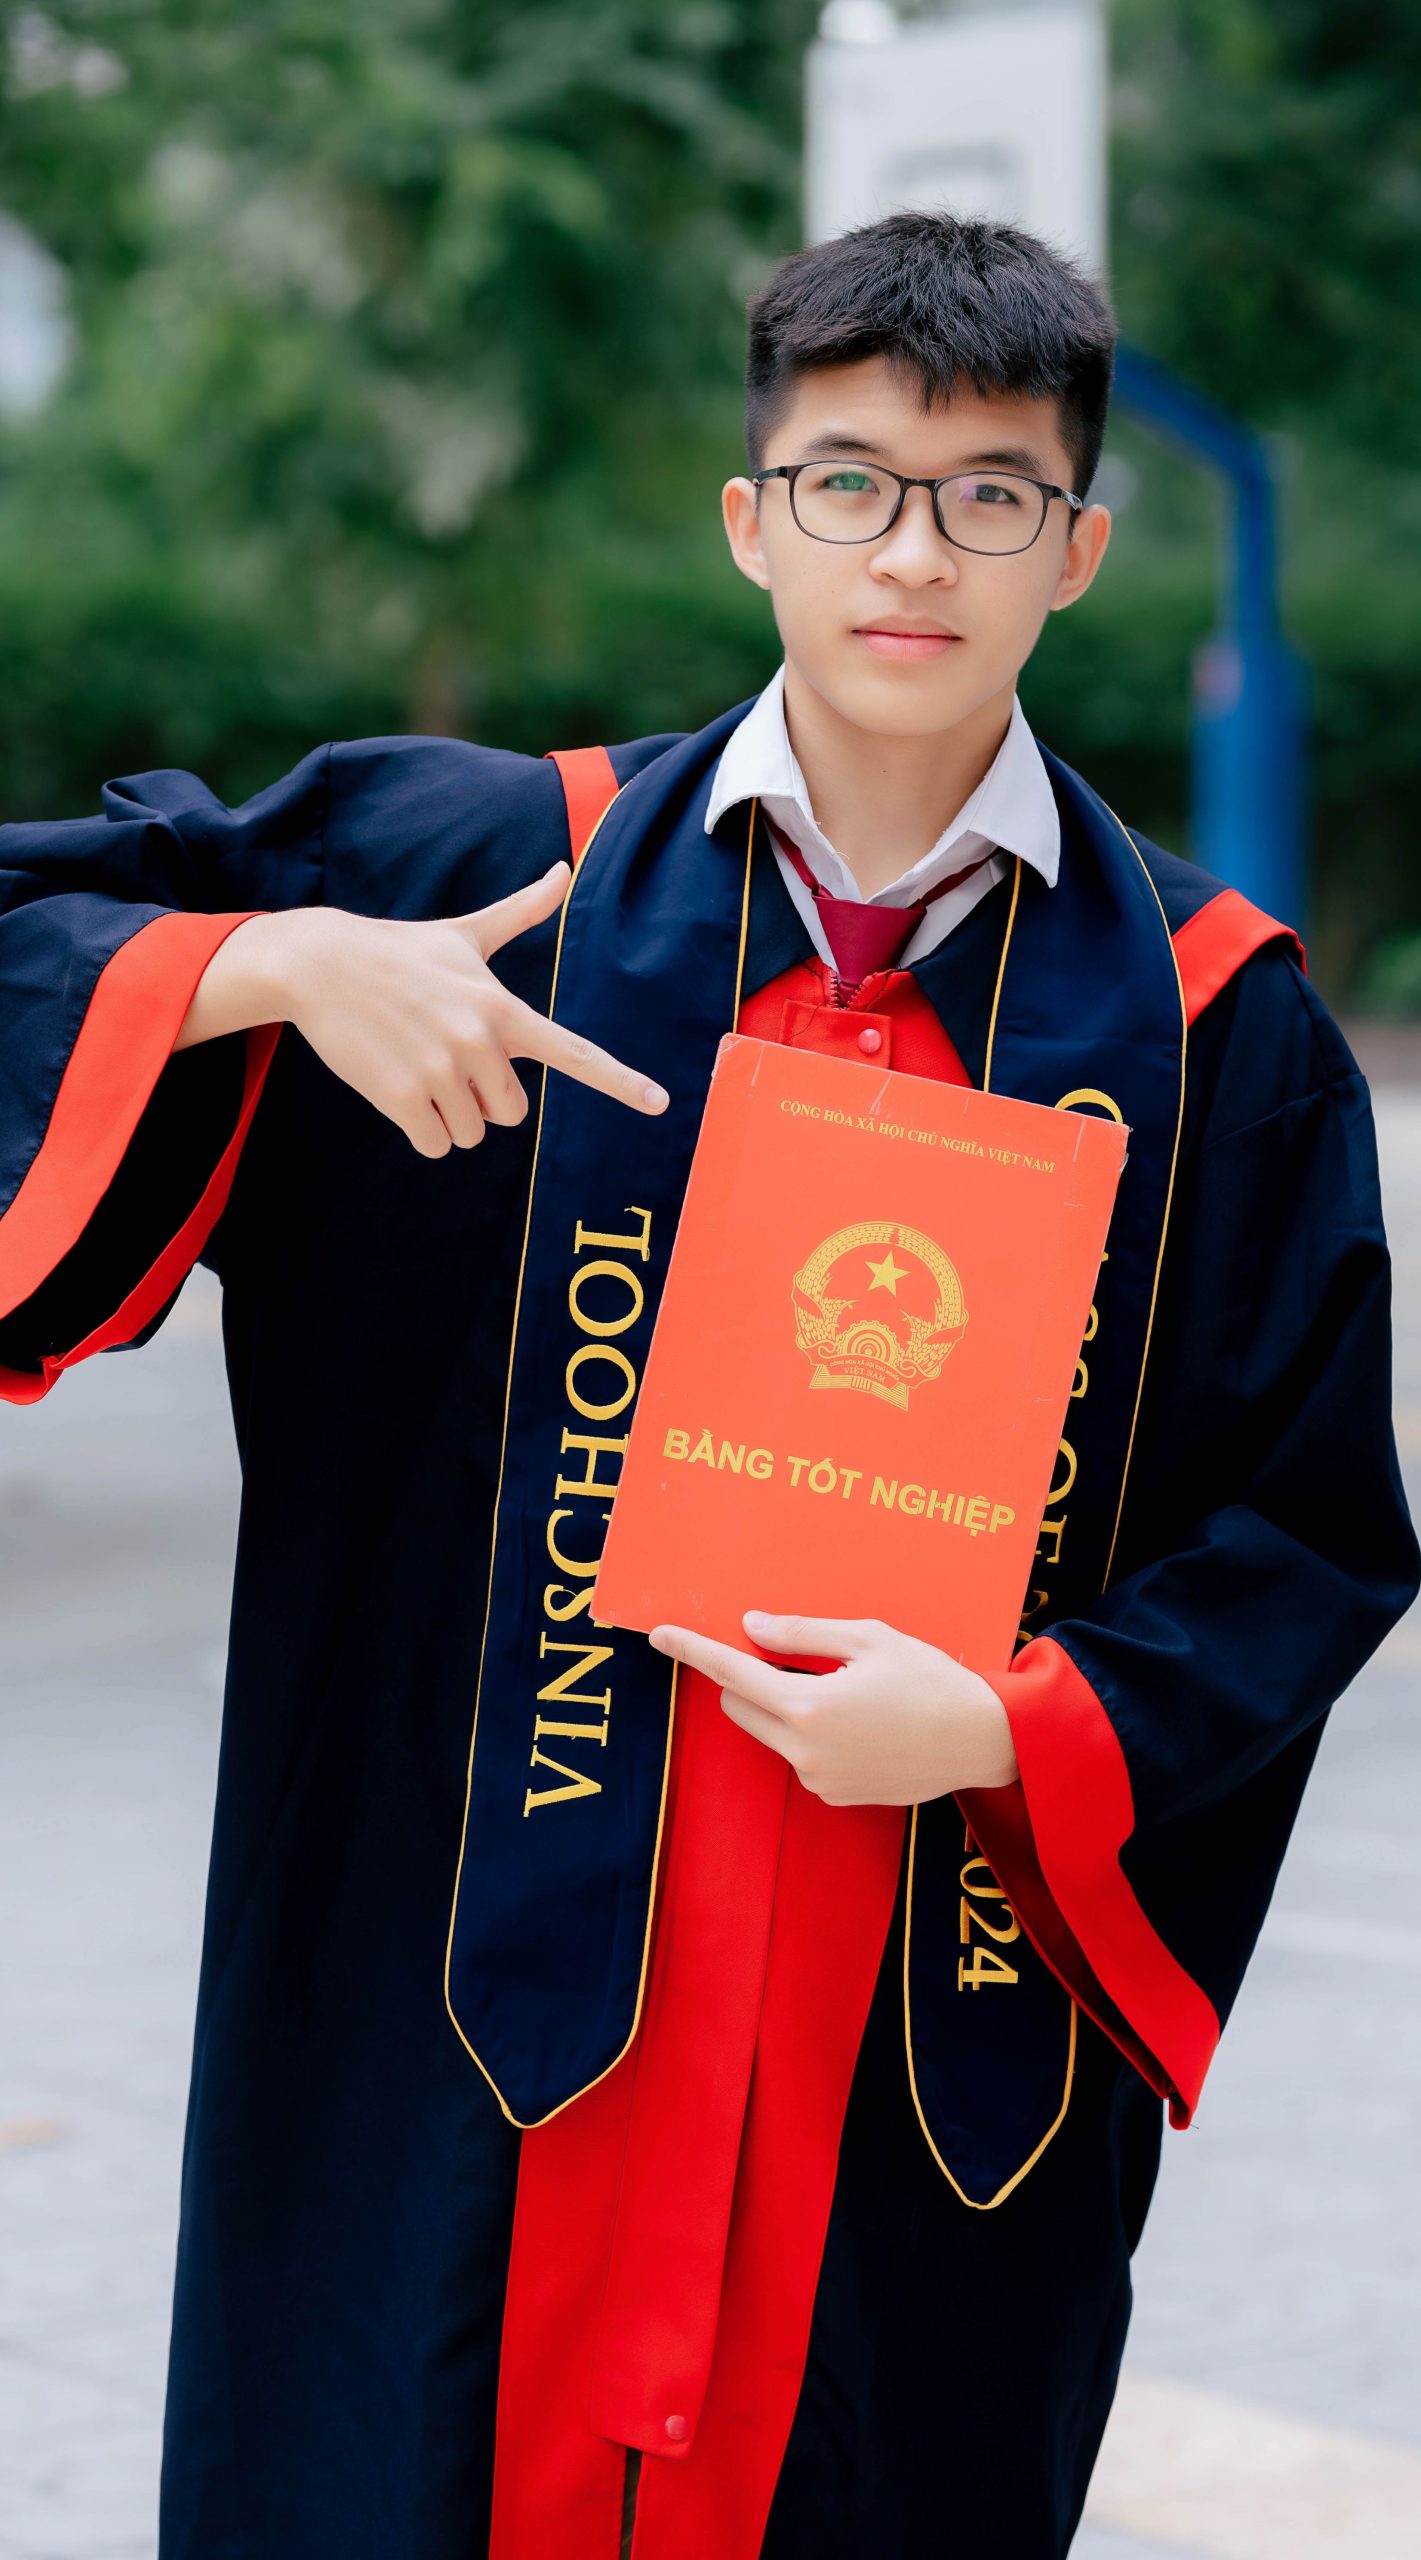 Nguyễn Nam Nguyên – Vinser đam mê khởi nghiệp giành 4 suất học bổng trị giá 12 tỷ VNĐ từ 4 Đại học Mỹ danh tiếng